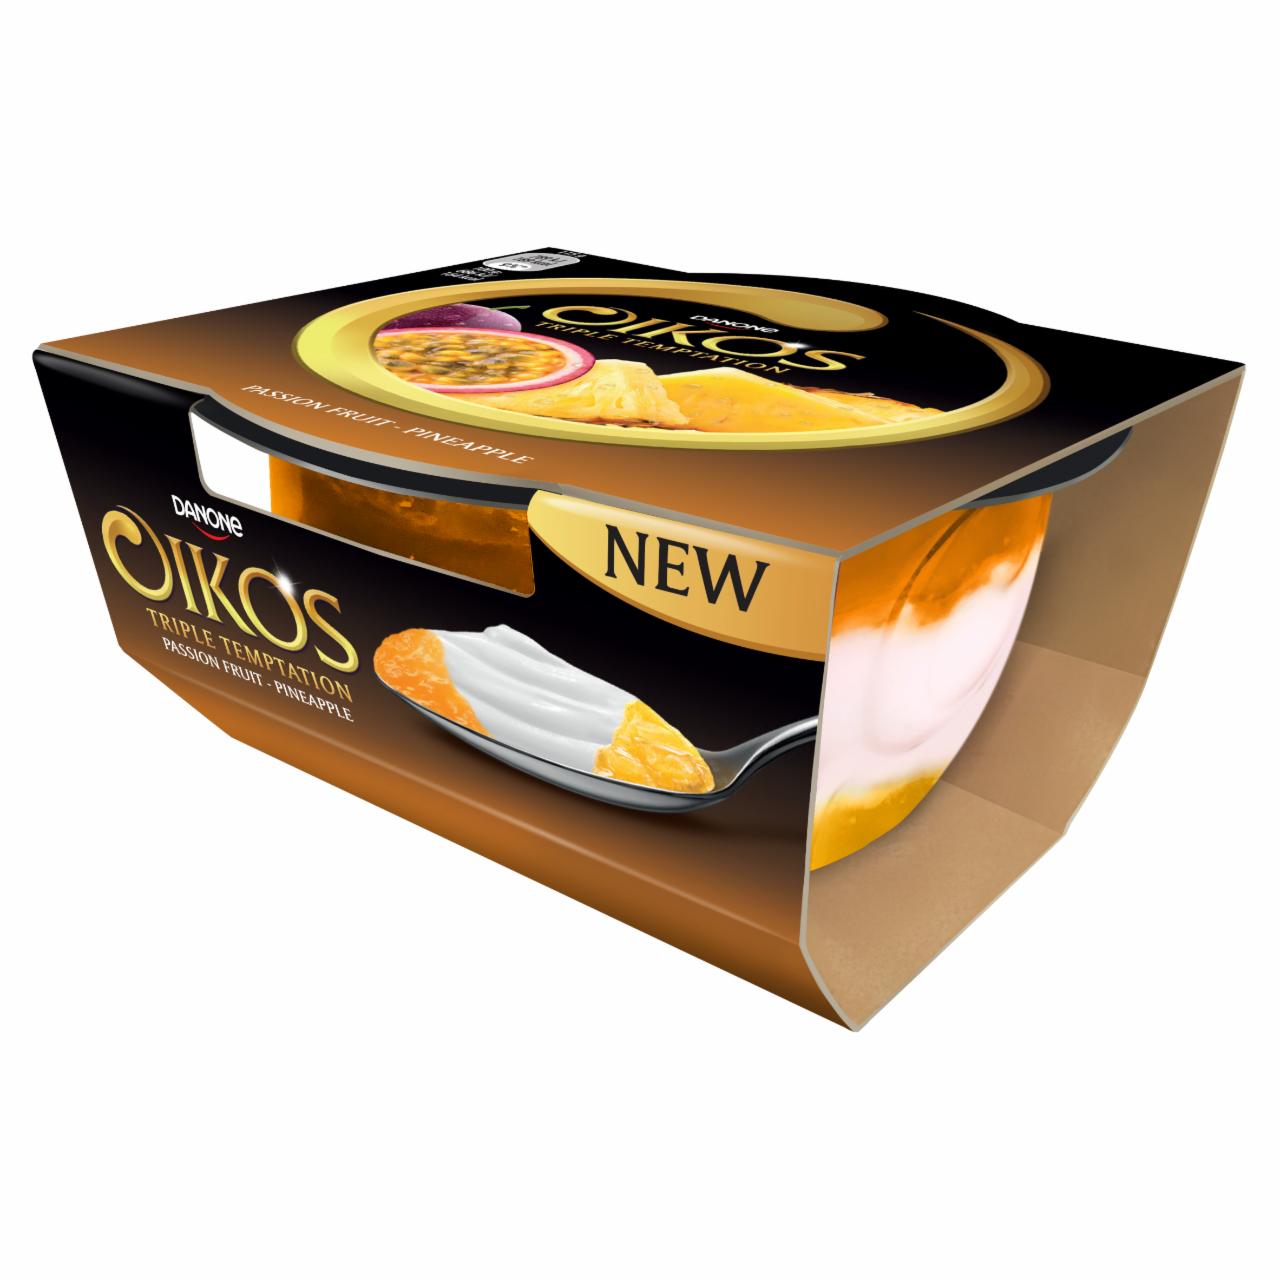 Képek - Danone Oikos Triple Temptation élőflórás görög krémjoghurt maracuja és ananászízű öntettel 115 g